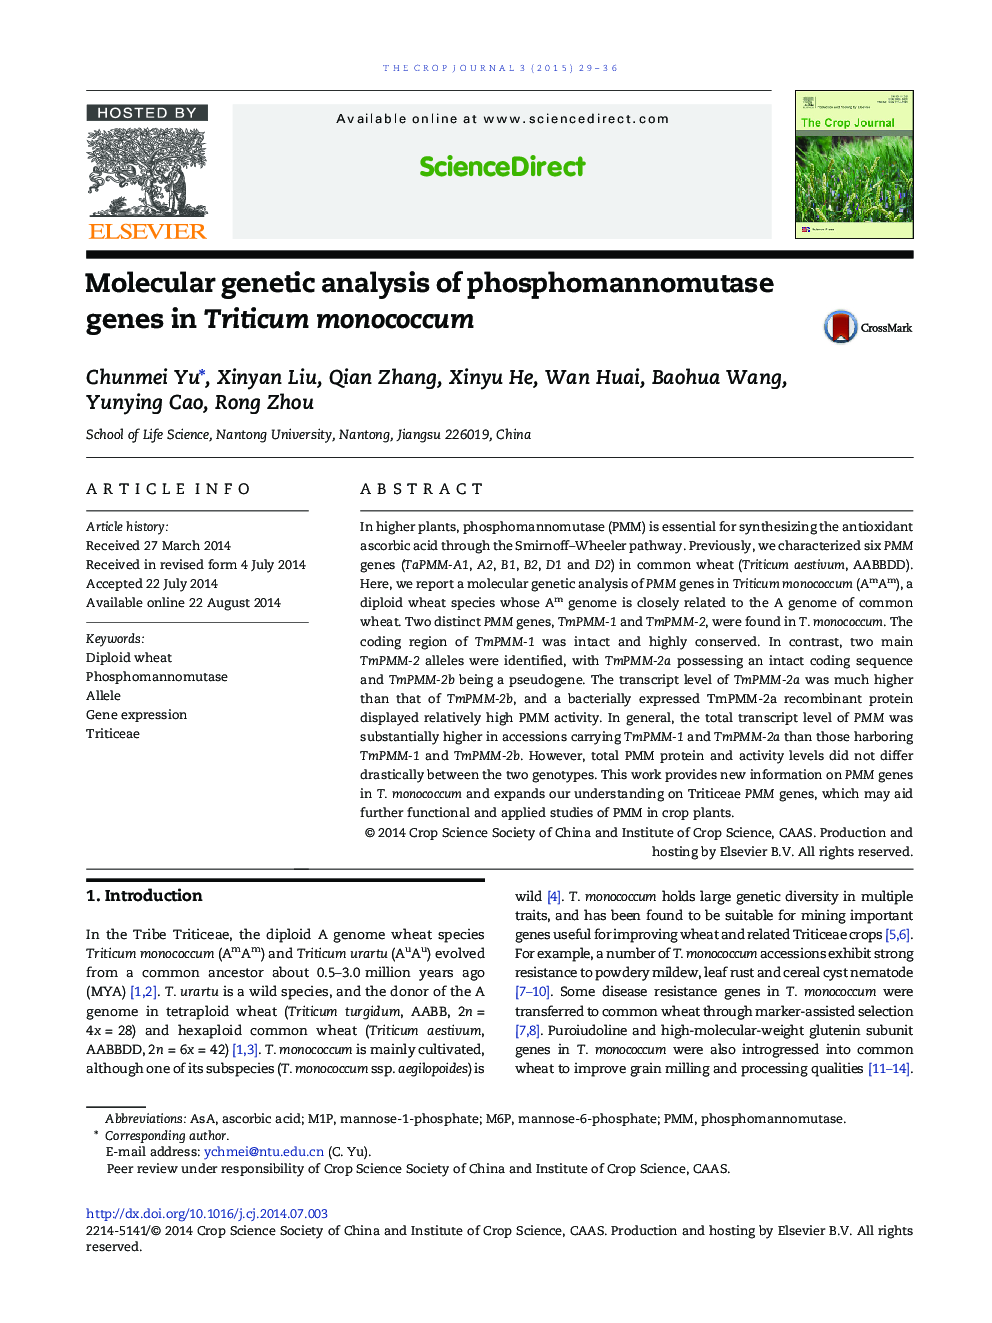 Molecular genetic analysis of phosphomannomutase genes in Triticum monococcum 